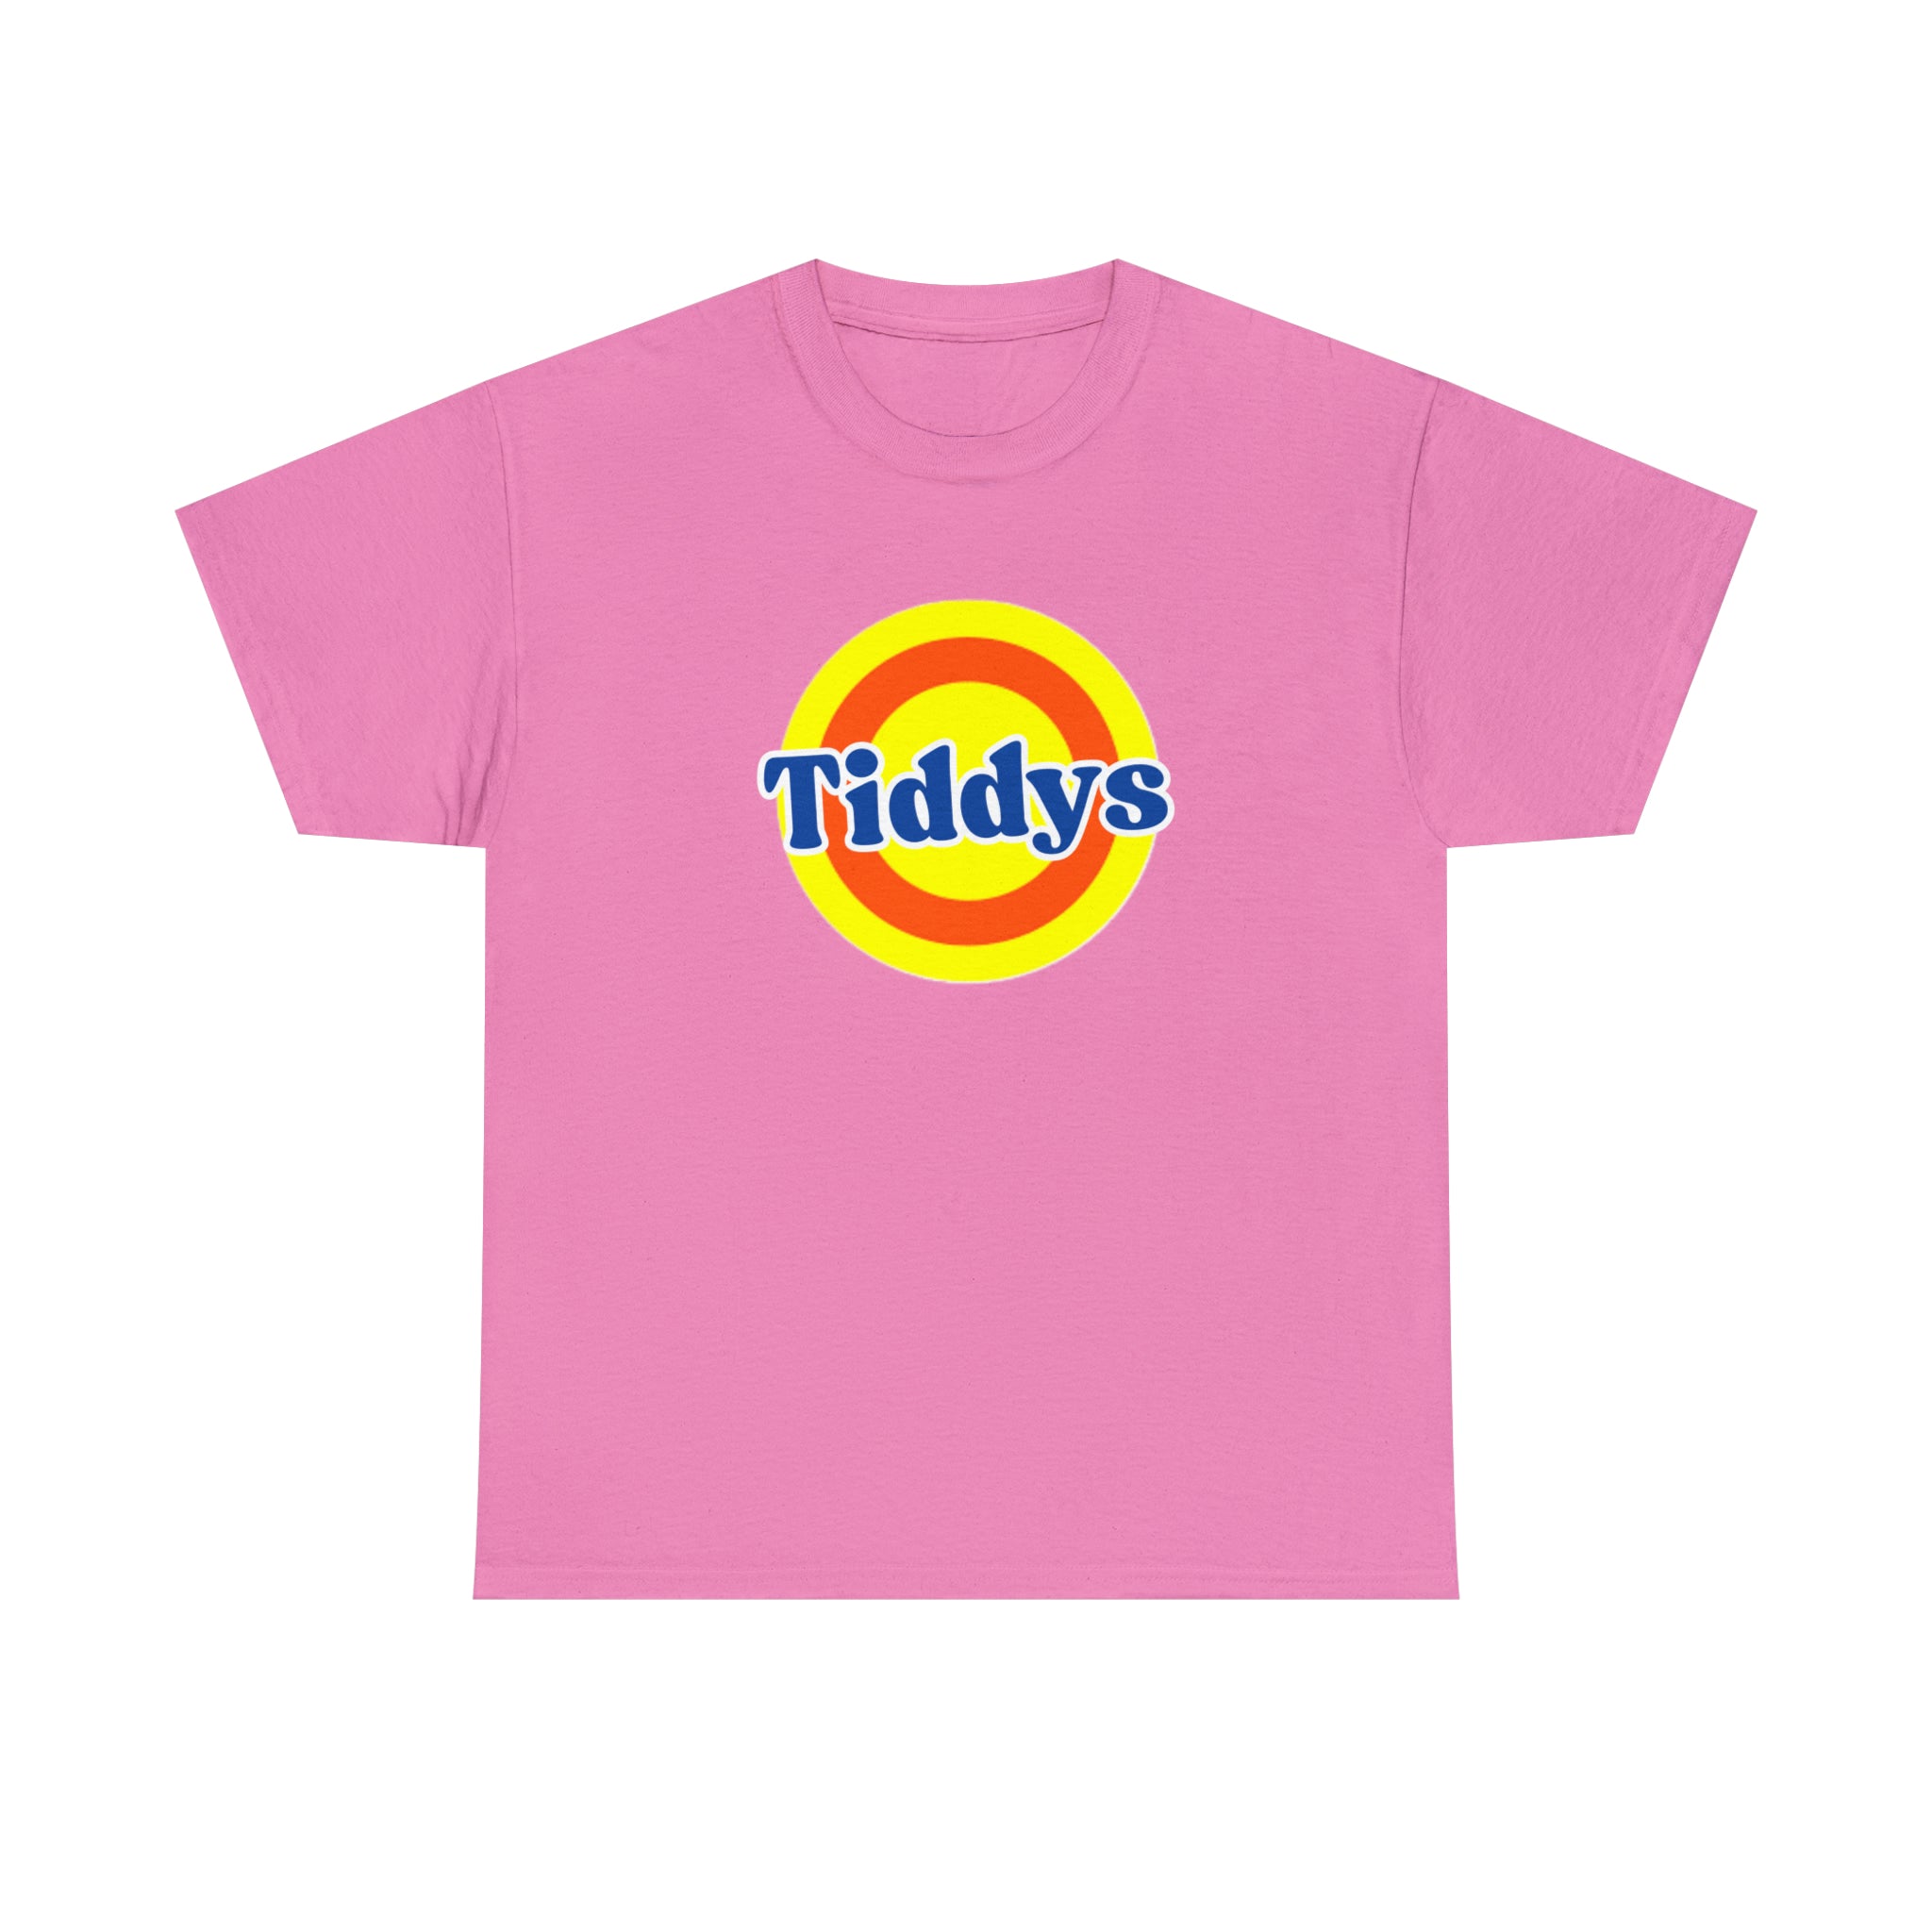 Tiddys